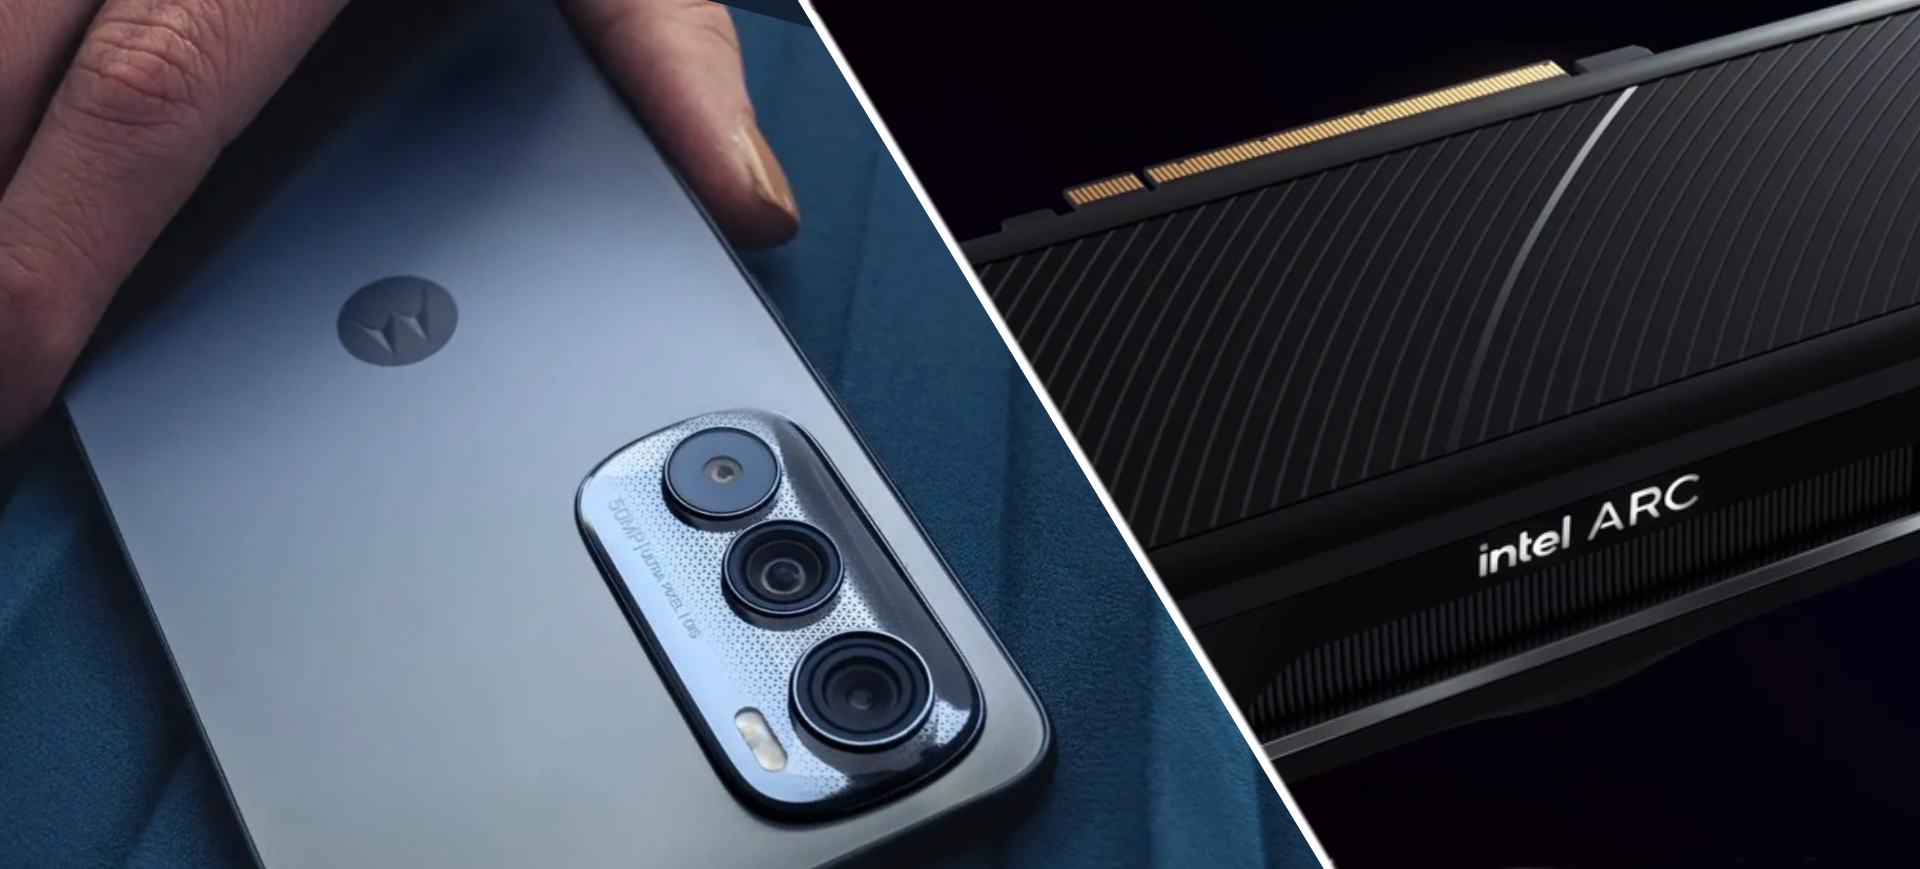 Montagem com duas imagens que representa os destaques da semana, uma ao lado da outra: à esquerda o novo Moto Edge 30 da Motorola; à direita uma placa de vídeo Intel ARC